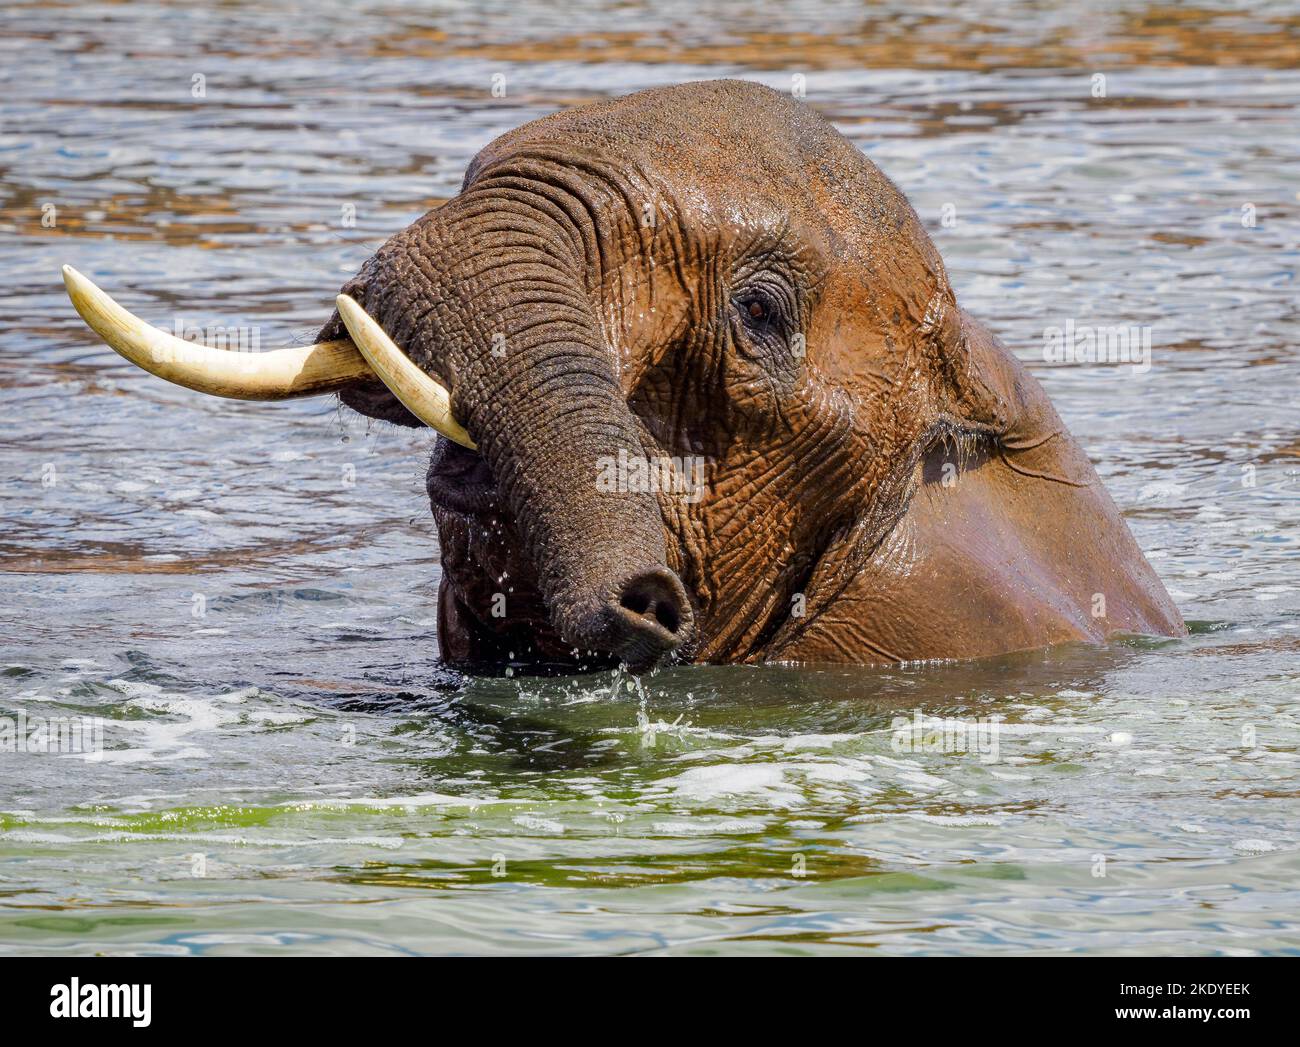 Elefante africano disfrutando de un baño en una poza en el Parque Nacional de Tsavo, Kenia Foto de stock